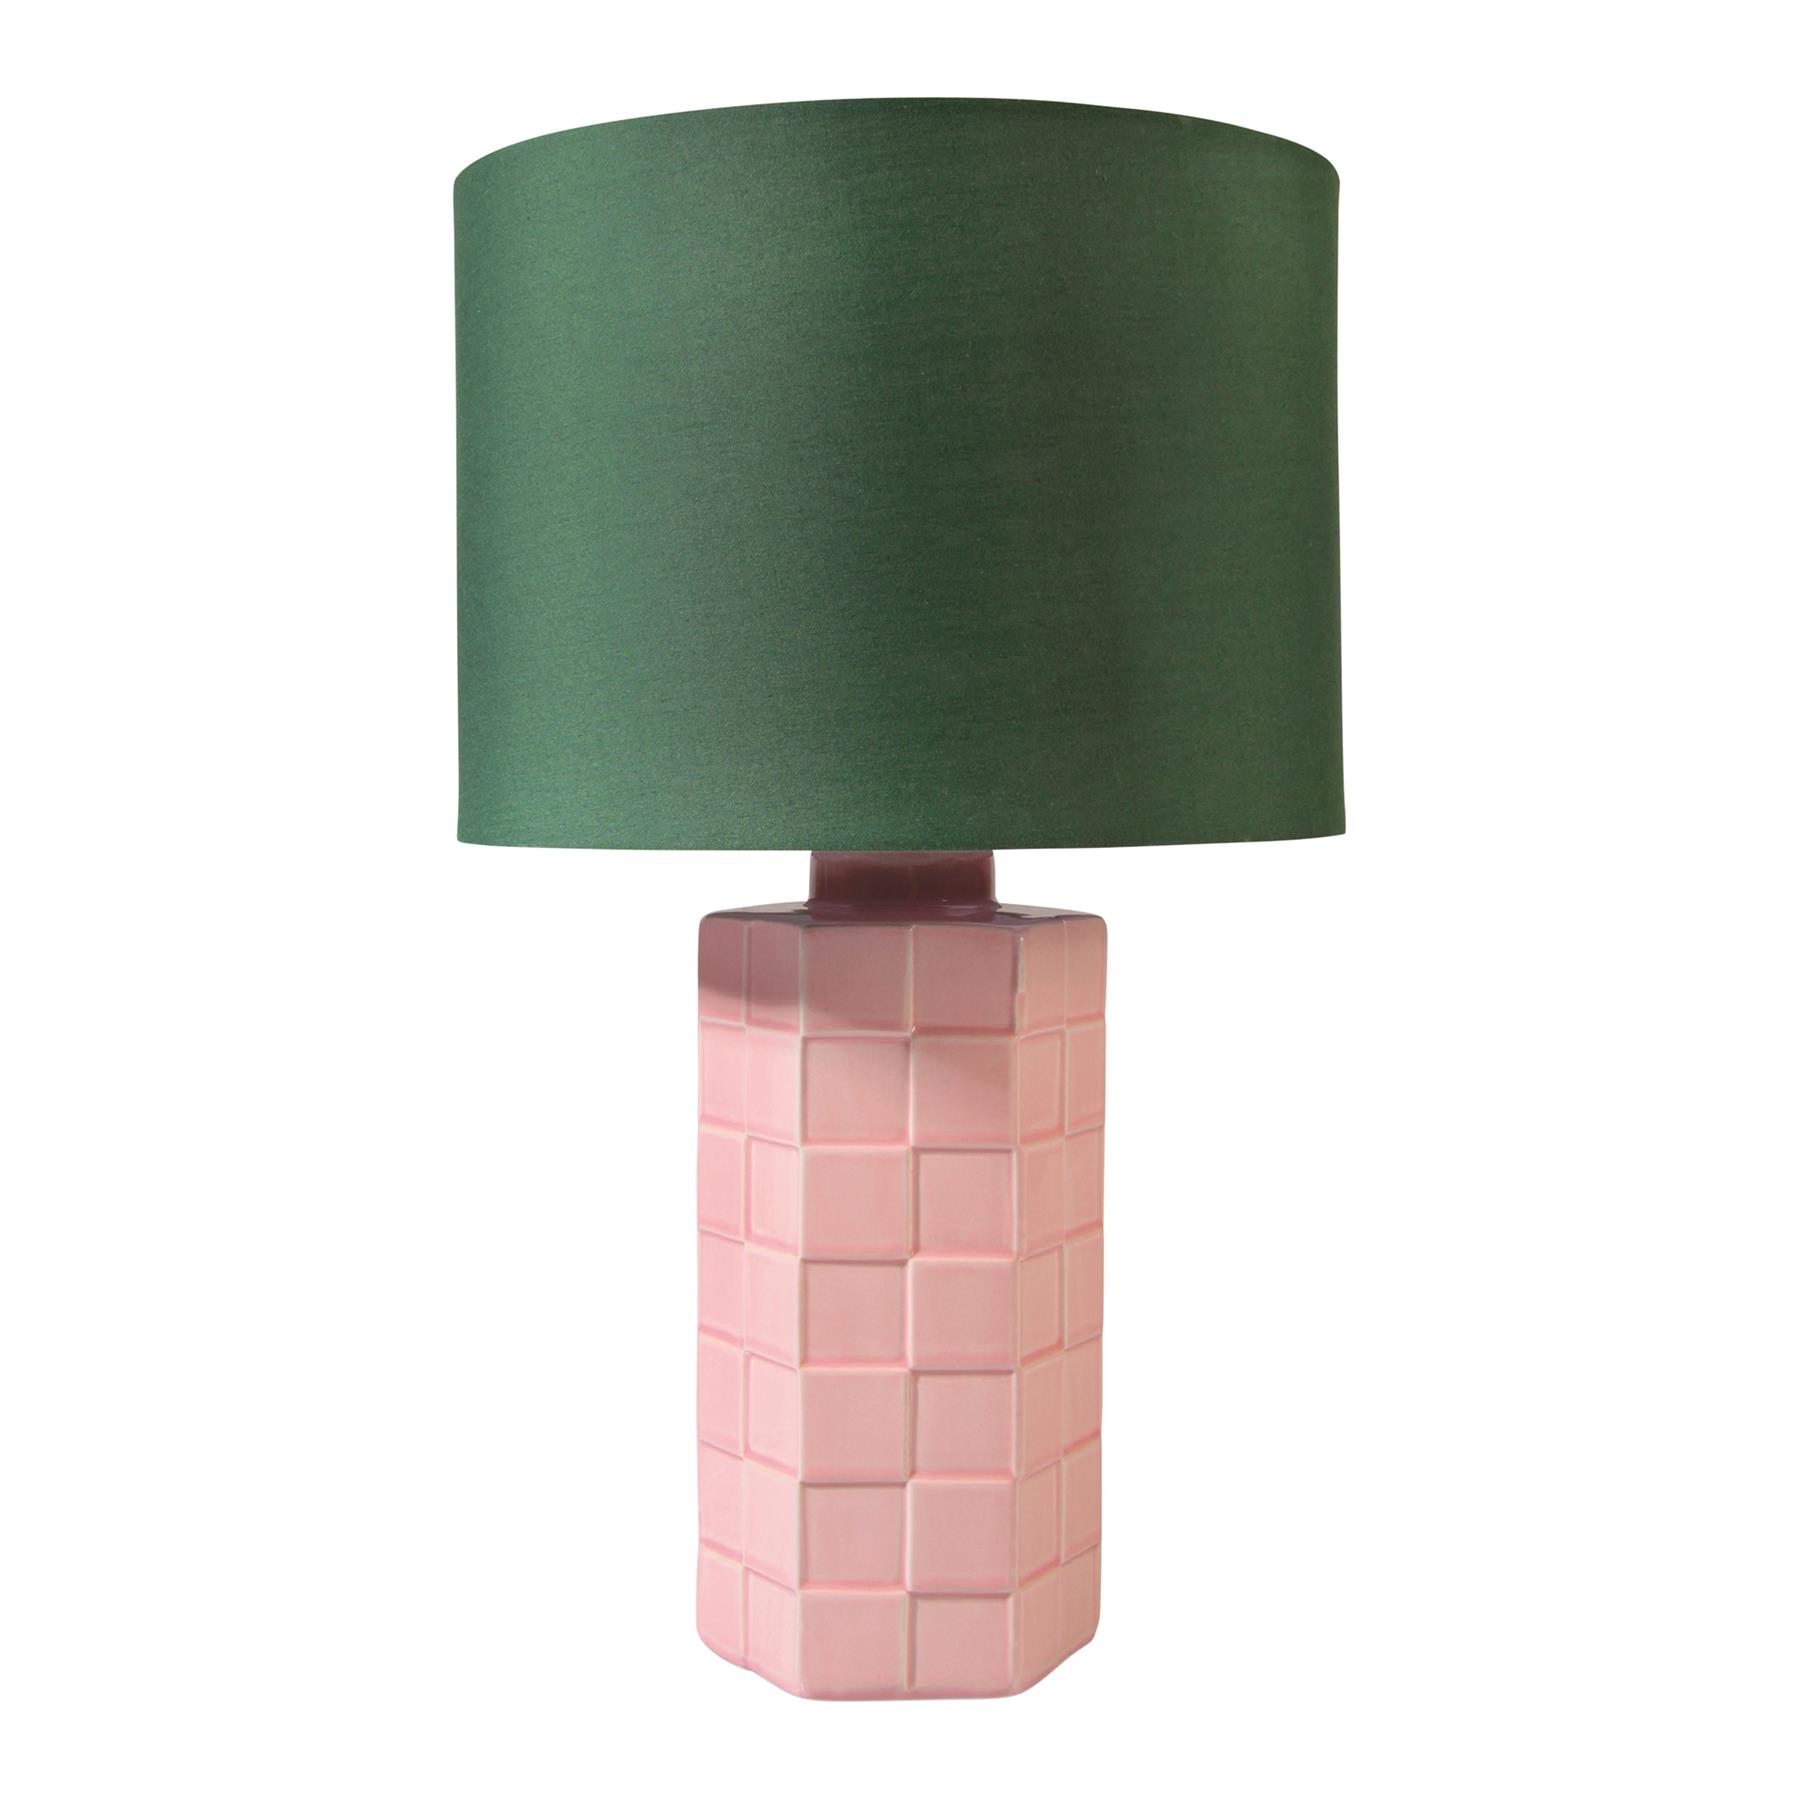 Lodge Aannemelijk bijvoorbeeld &k amsterdam Check Lamp - Roze kopen? Shop bij fonQ!